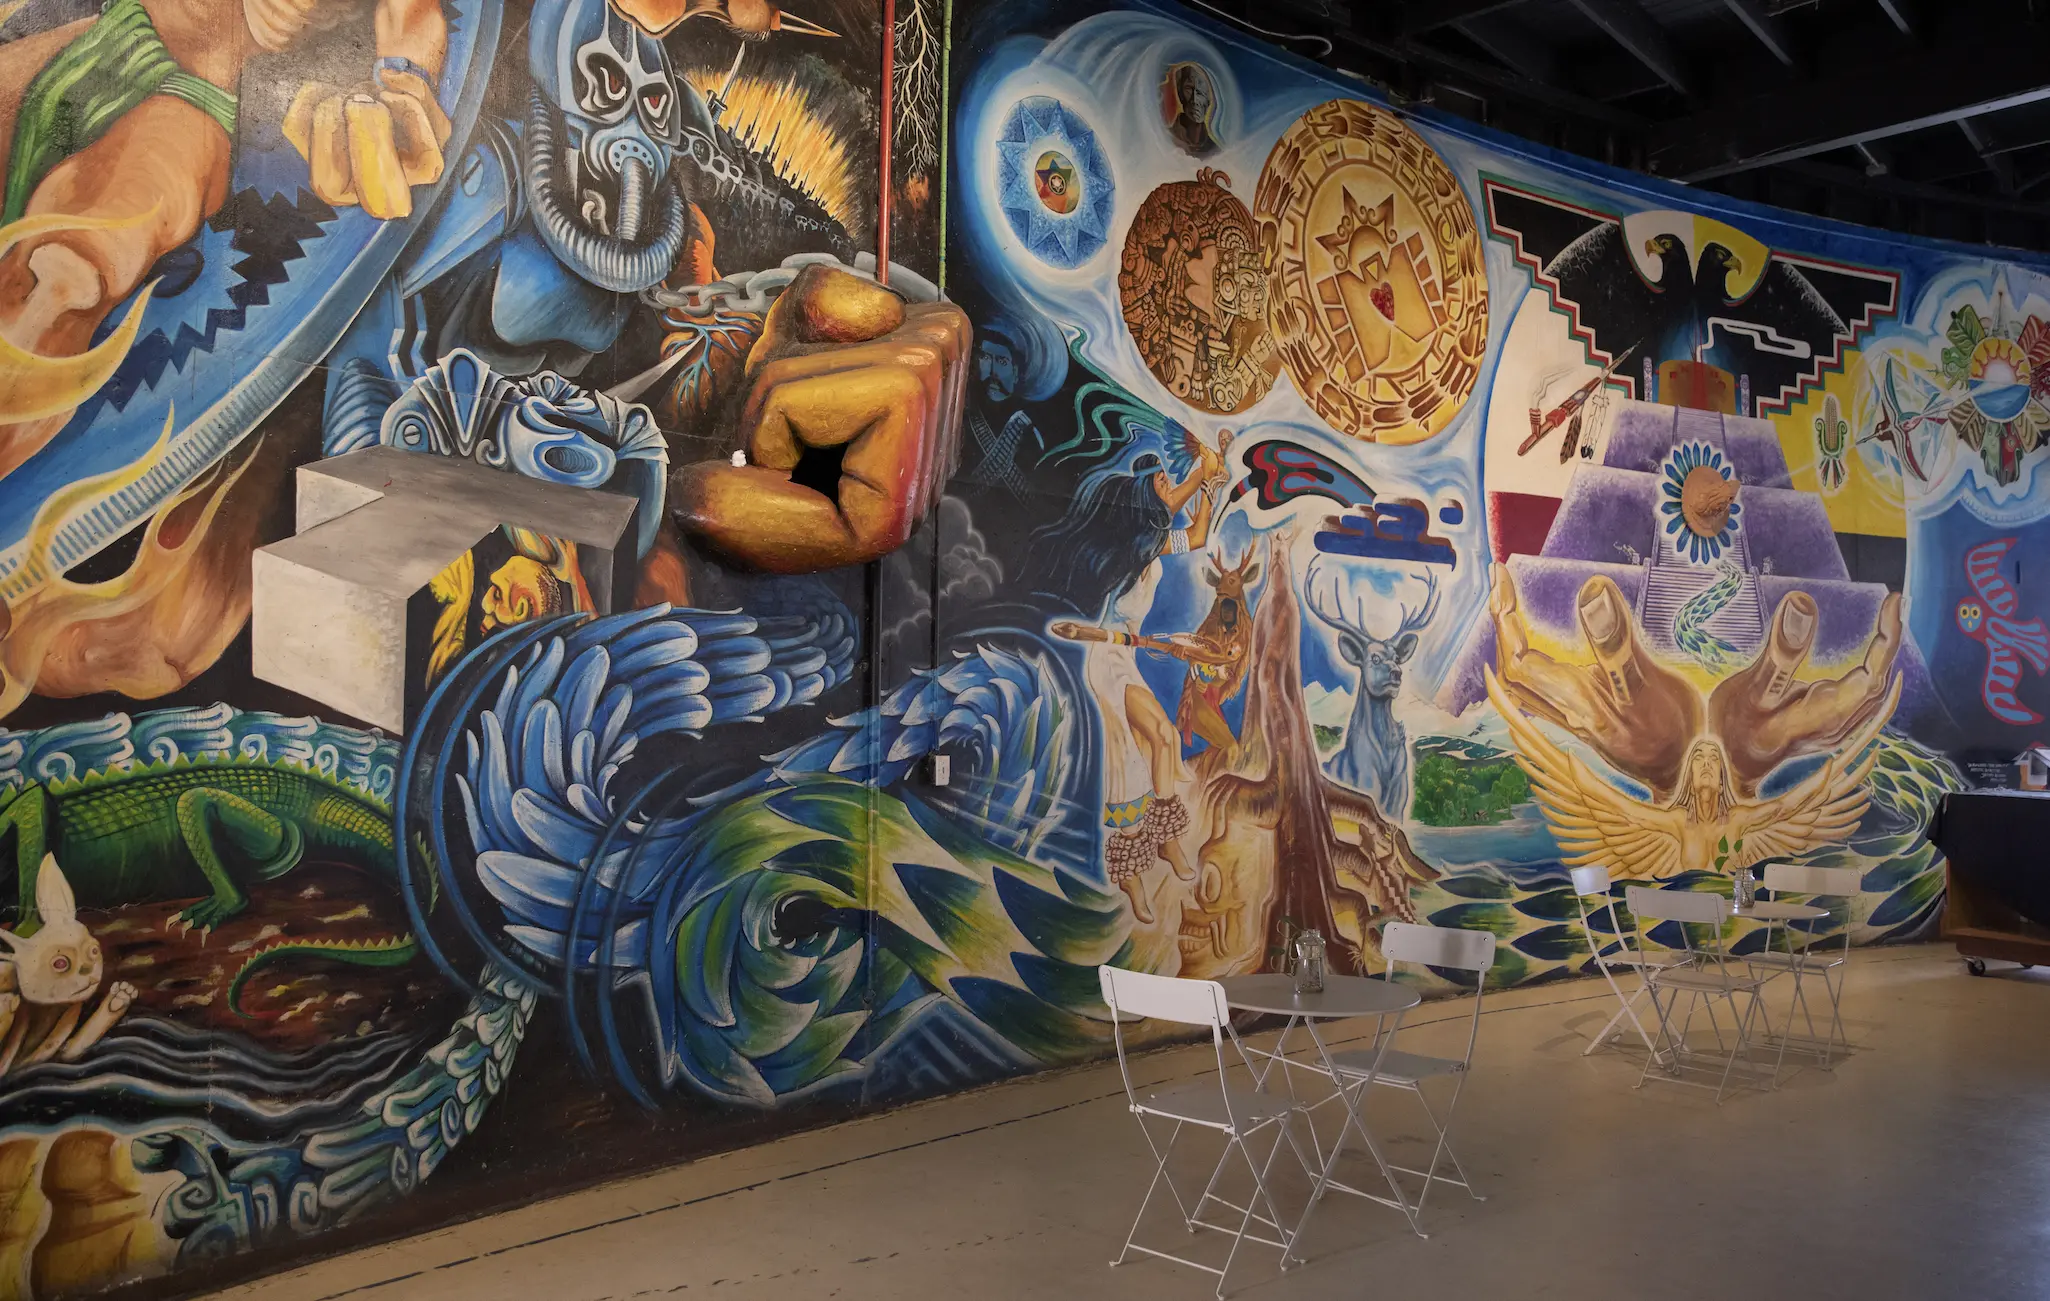 Colorful murals inside Cultural de la Raza's building depicting animals, hands and symbols.